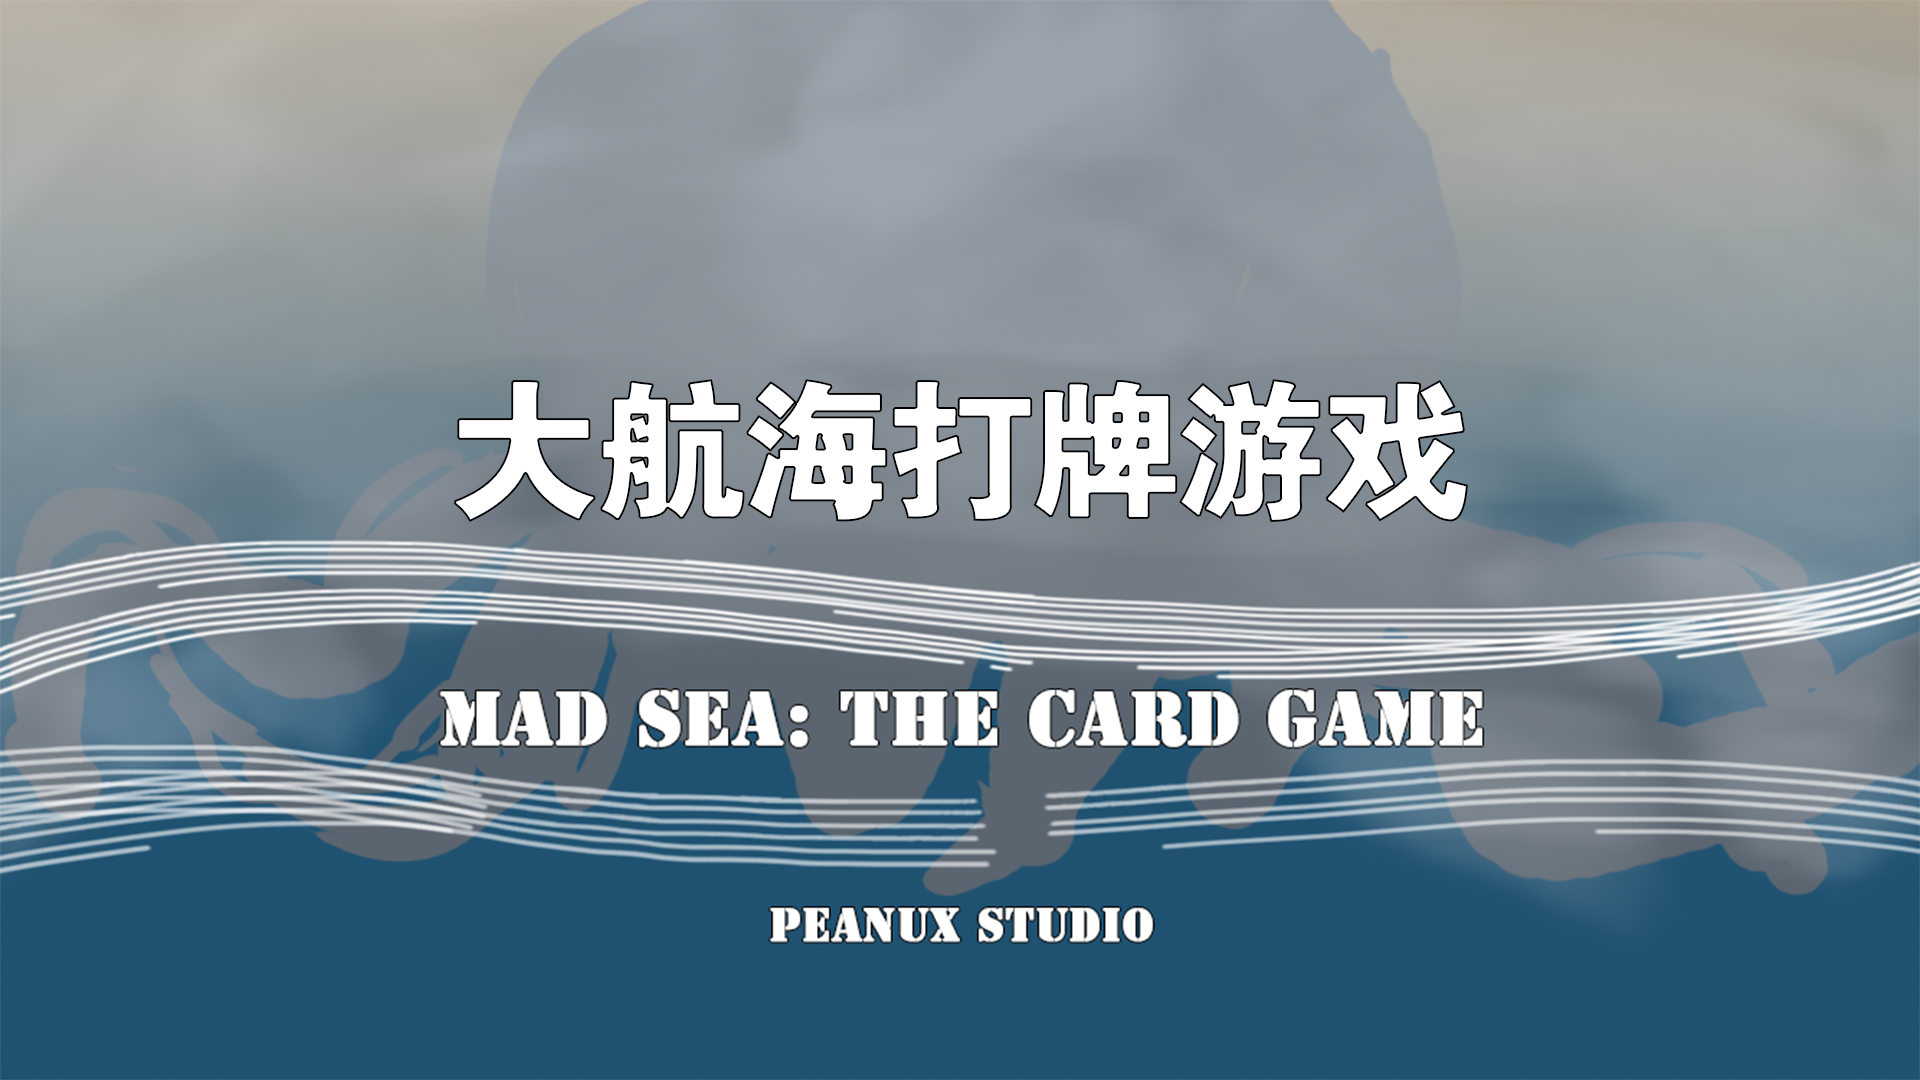 Banner of महान यात्रा कार्ड खेल 